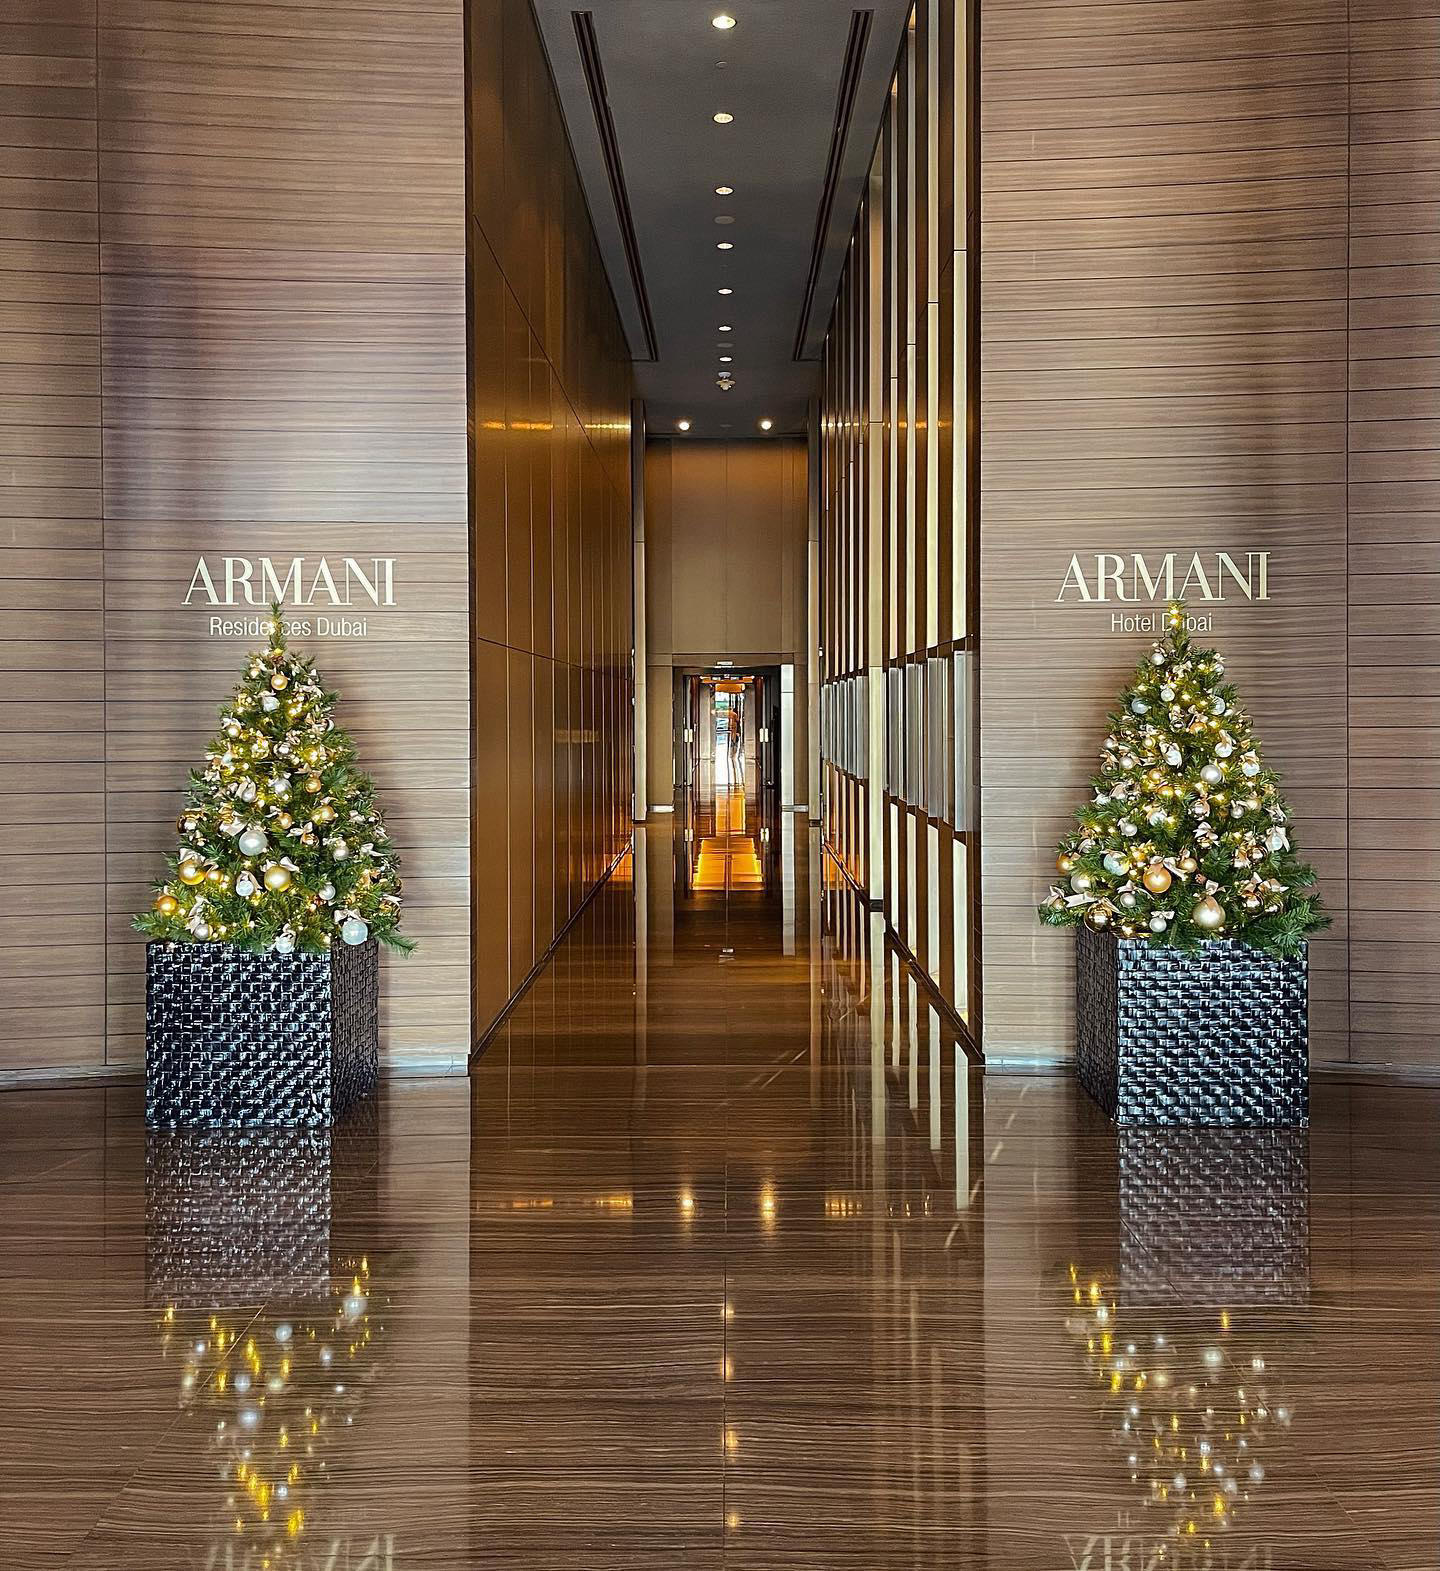 Armani Hotel Dubai - Christmas has arrived in the Armani Hotel